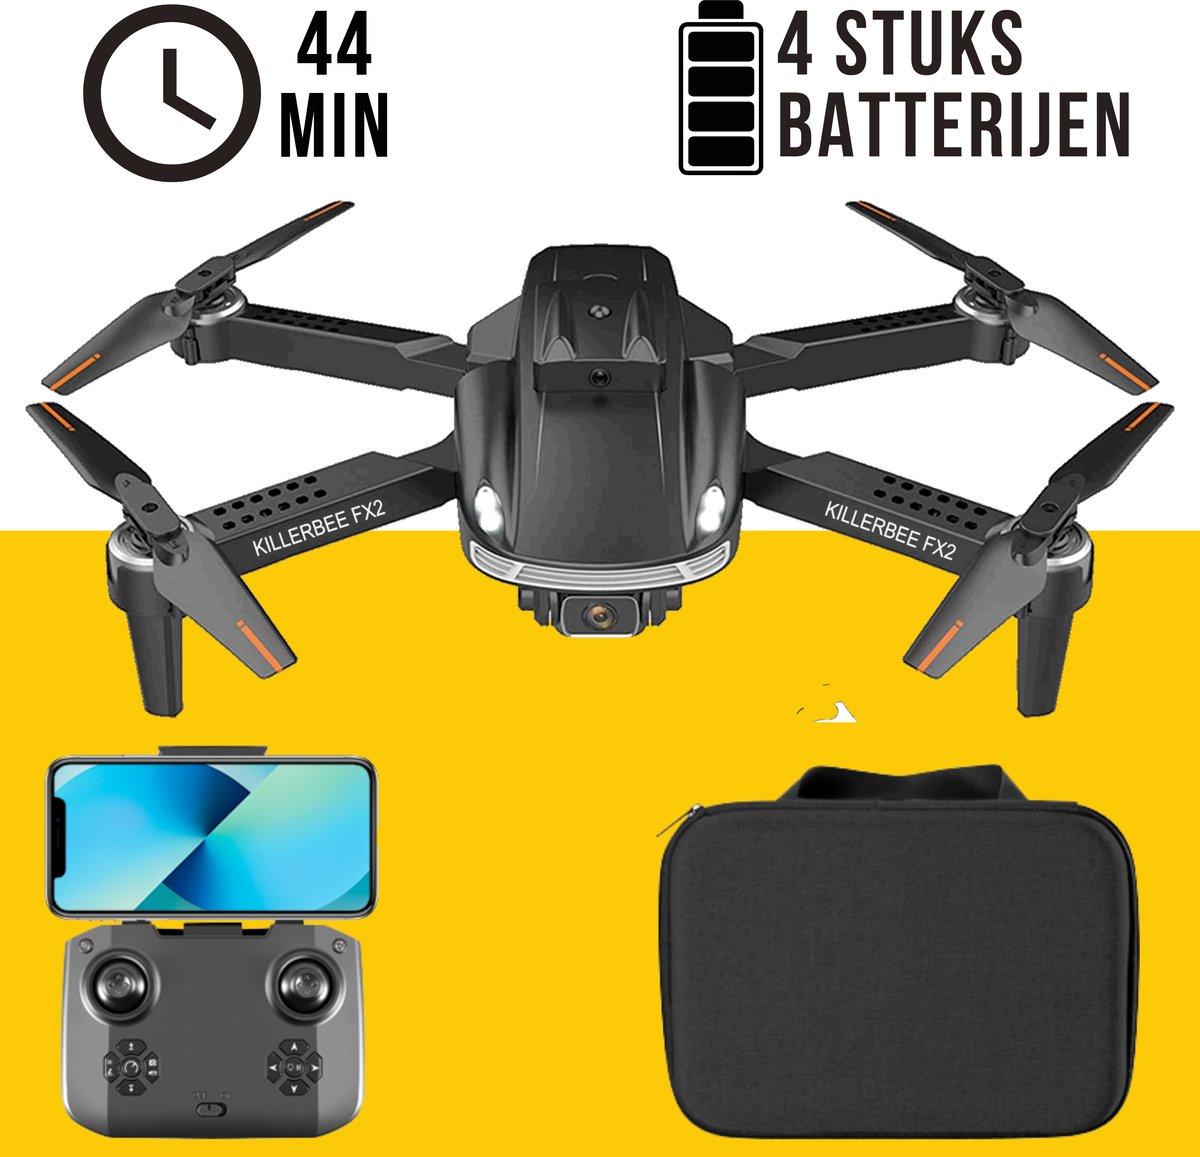 Killerbee FX3 Super Hornet - Drone met dubbele camera - geschikt voor kinderen en volwassenen - Ultra Fly More Combo - 44 minuten vliegtijd - Inclusief gratis video tutorials, tas en 4 batterijen!